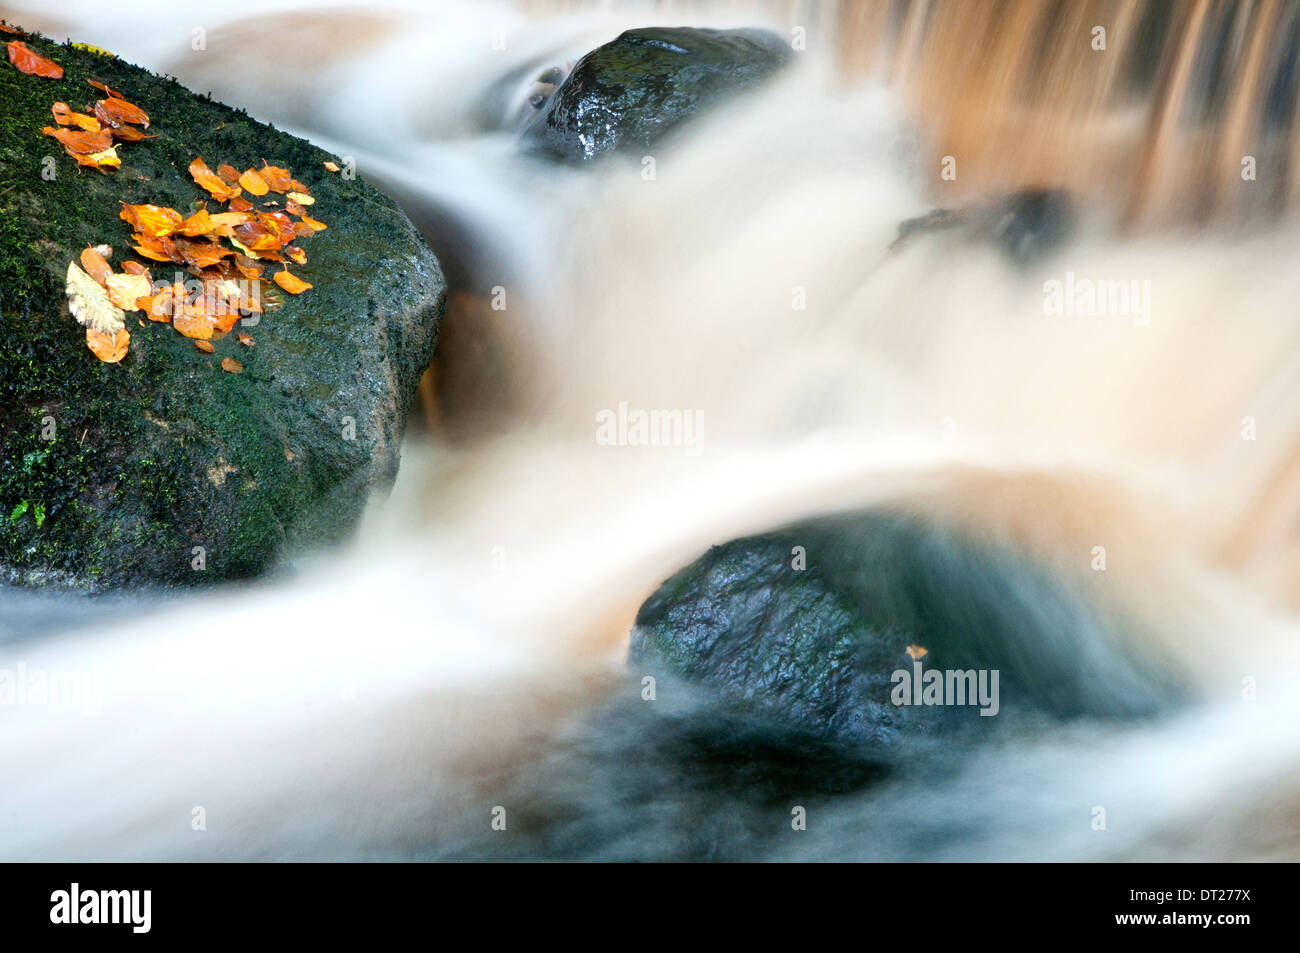 Rivière qui coule avec les feuilles d'automne et les roches Banque D'Images